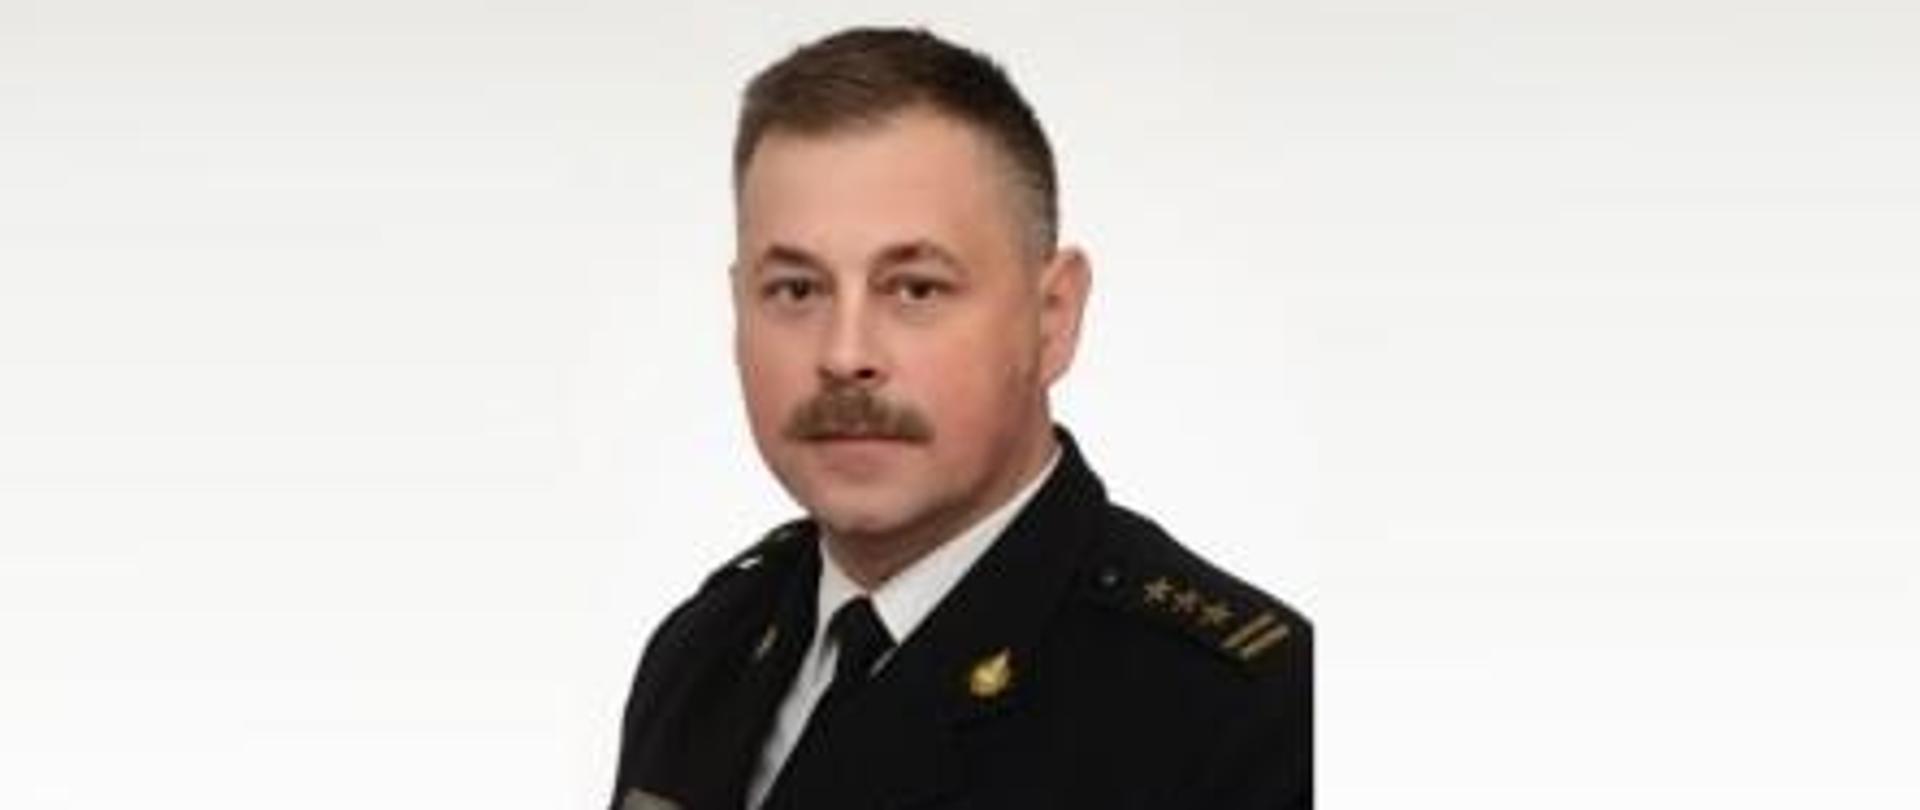 Zdjęcie przedstawia zdjęcie Zastępcy Komendanta Miejskiego Państwowej Straży Pożarnej st. bryg. Marcina Ziomka ubranego w mundur galowy. Zdjęcie wykonane na białym tle.